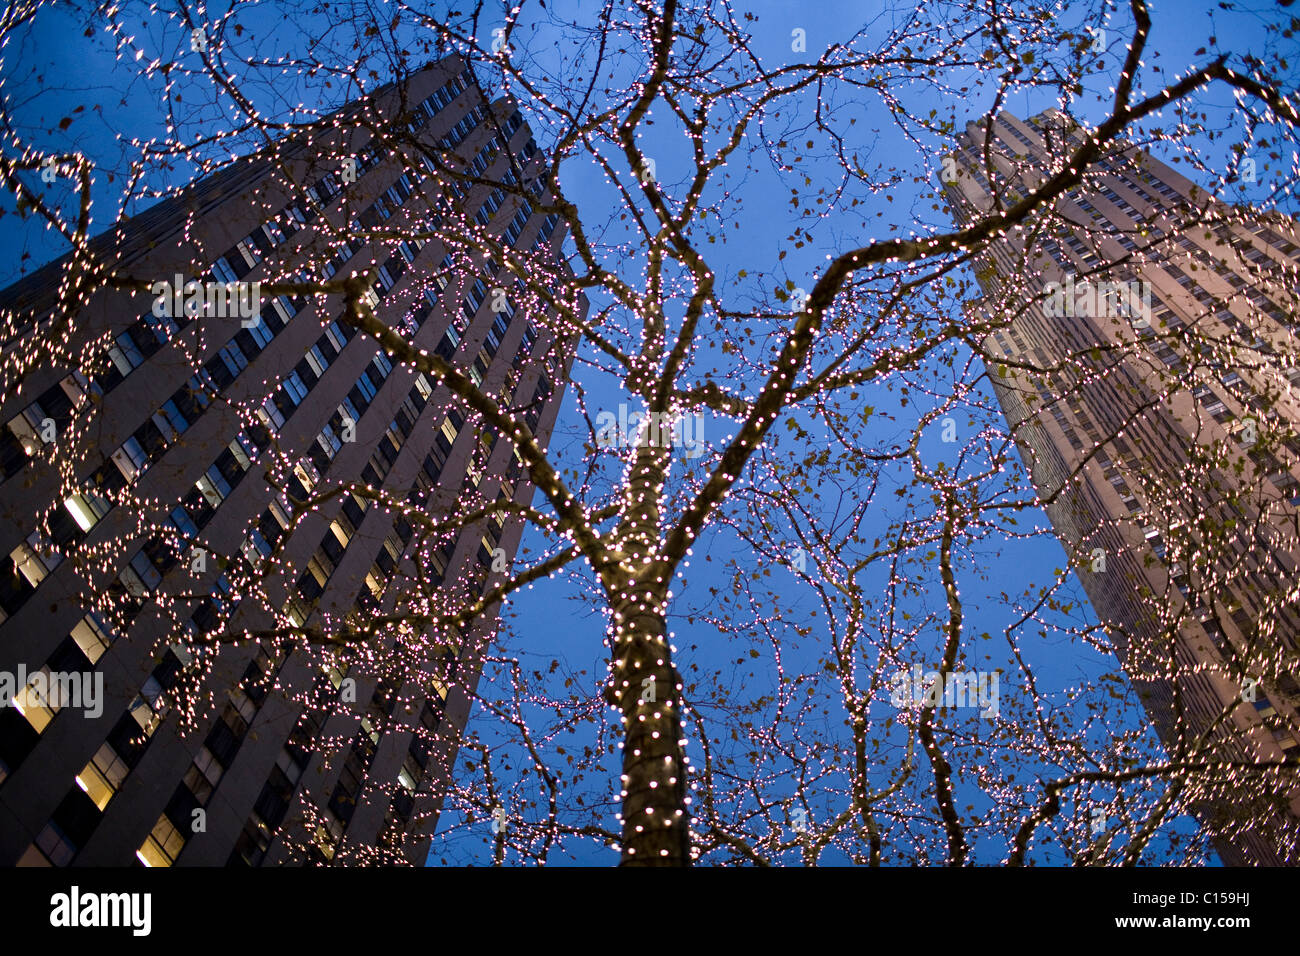 El Rockefeller Center en la noche con las luces del árbol de Noël Foto de stock